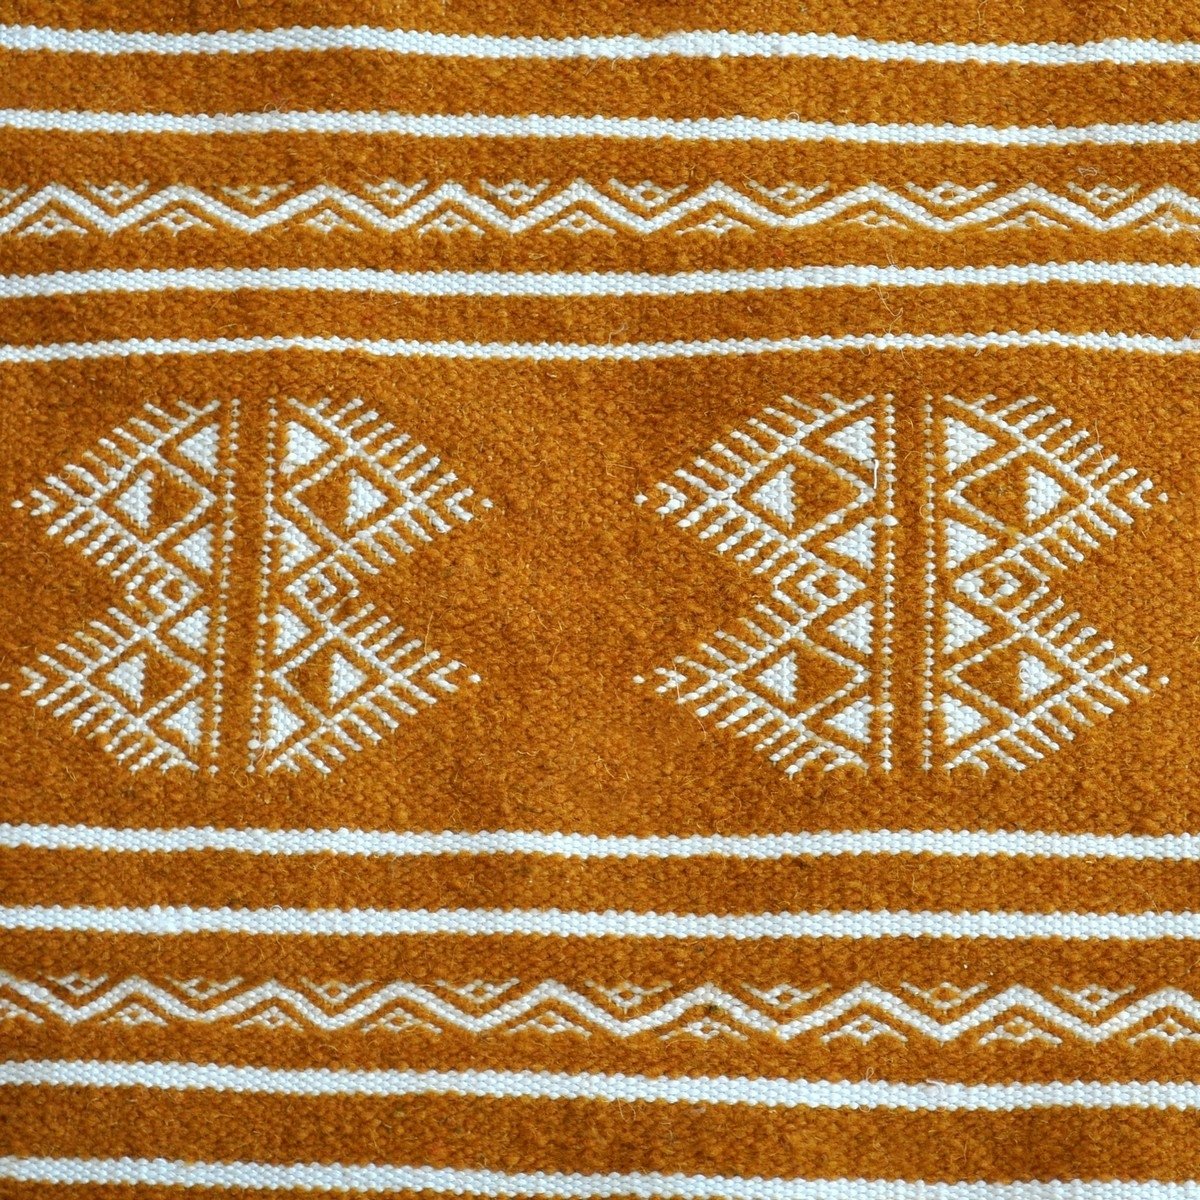 Tapis berbère Tapis Kilim Idleb 60x115 Jaune ocre (Tissé main, Laine, Tunisie) Tapis kilim tunisien style tapis marocain. Tapis 